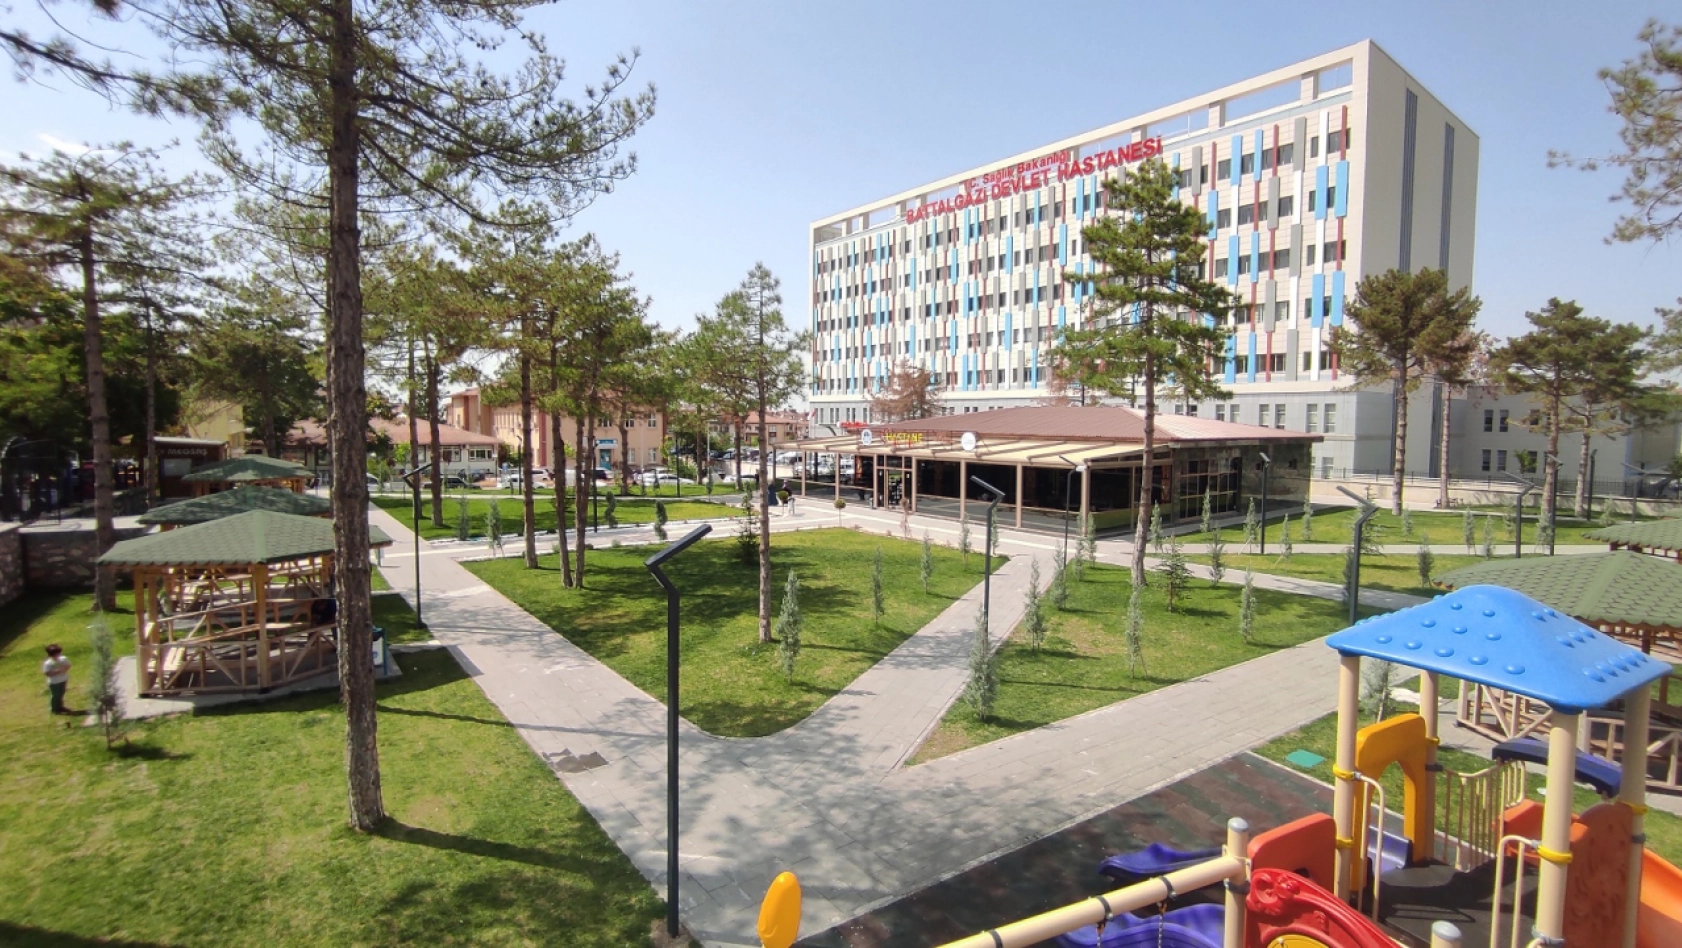 Battalgazi Belediyesi Hastane Kafe Yoğun İlgi Görüyor